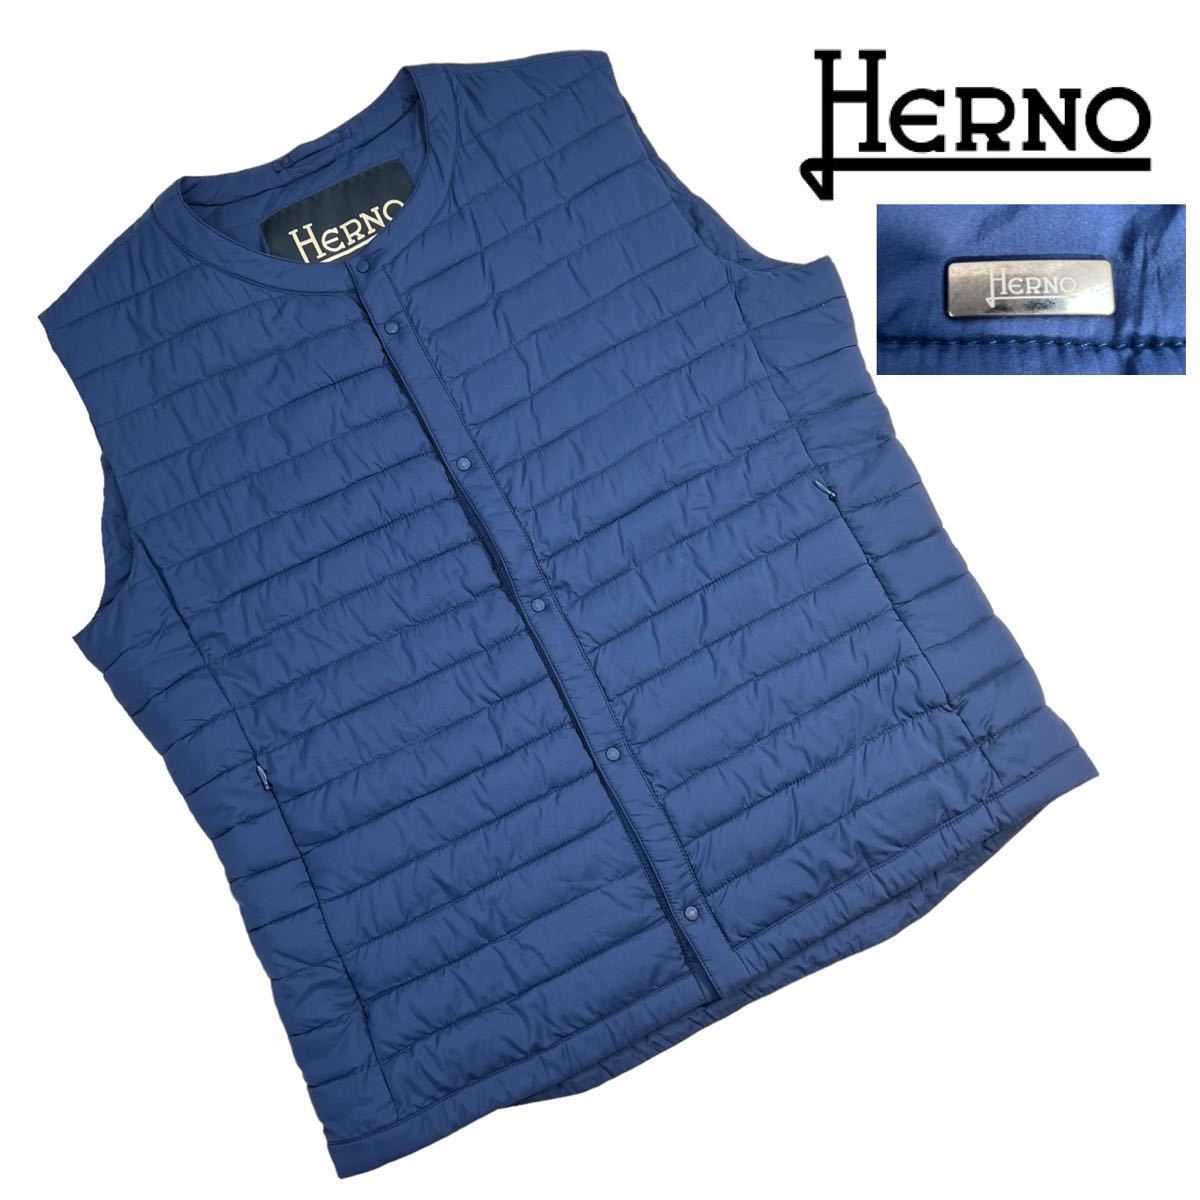 極美品 HERNO ヘルノ インナーダウンベスト サイズ50/XL相当 ブルー ネイビー クルーネック 希少 高機能ポリエステル 最高級品 上質 A3017